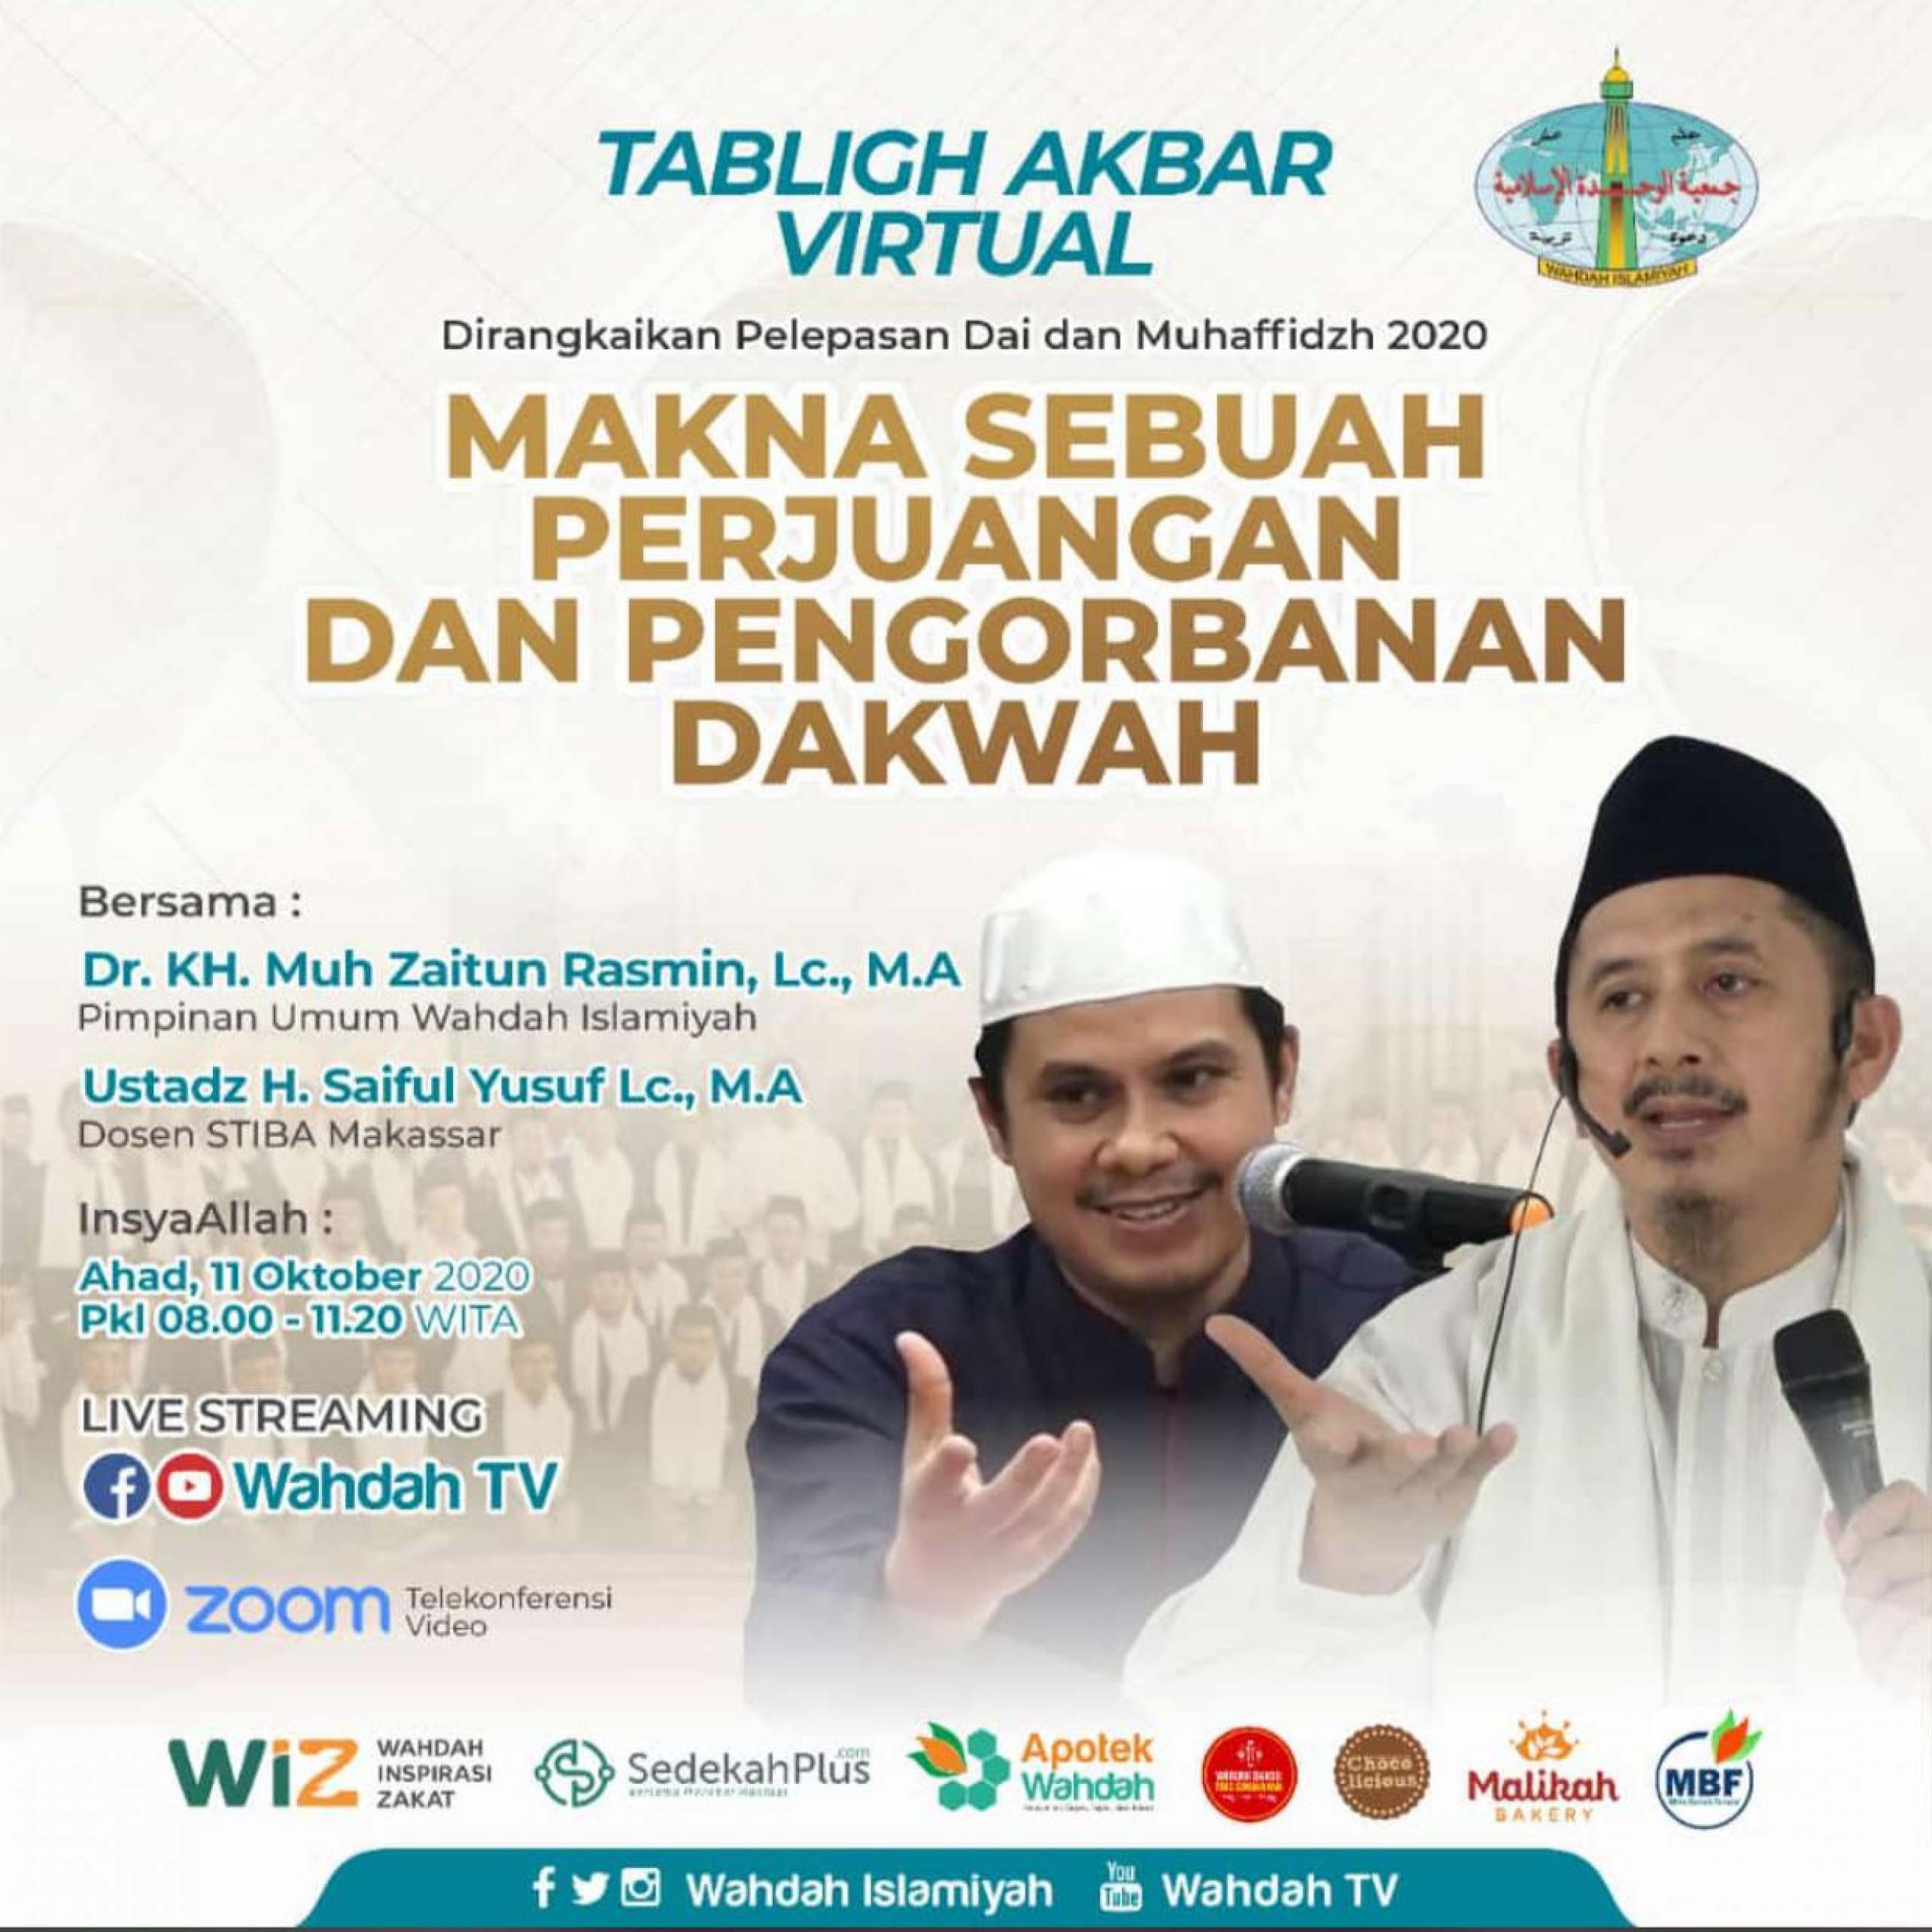 Tabligh Akbar Virtual Wahdah Islamiyah - Makna Sebuah Perjuangan dan Pengorbanan Dakwah